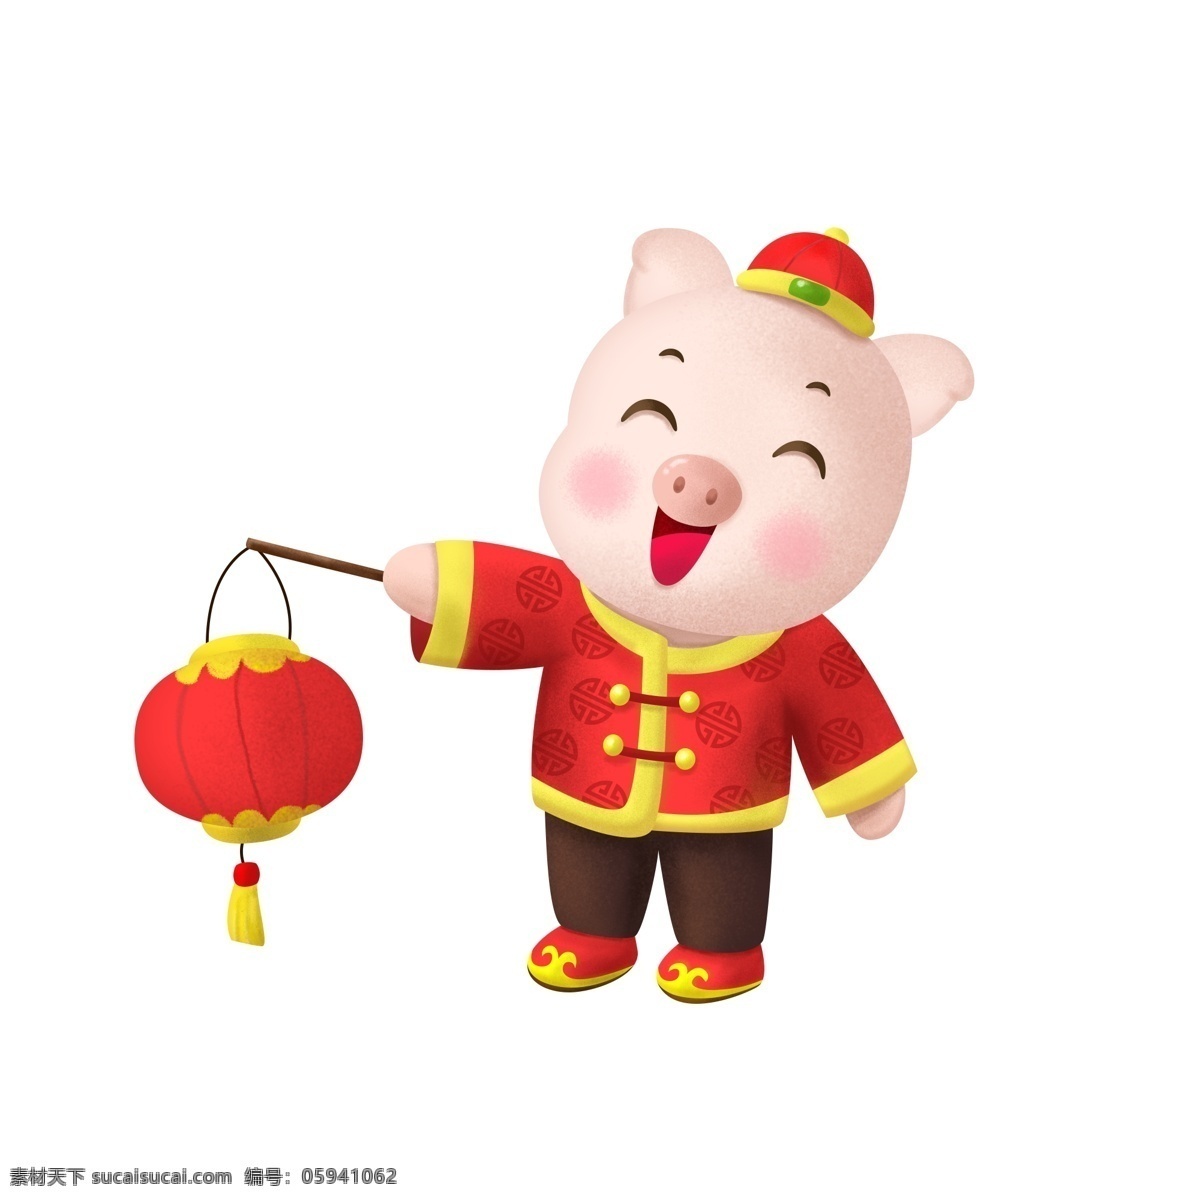 春节 新年 猪年 卡通 生肖 猪 传统 喜庆 唐装 灯笼 可爱 卡通猪 生肖猪